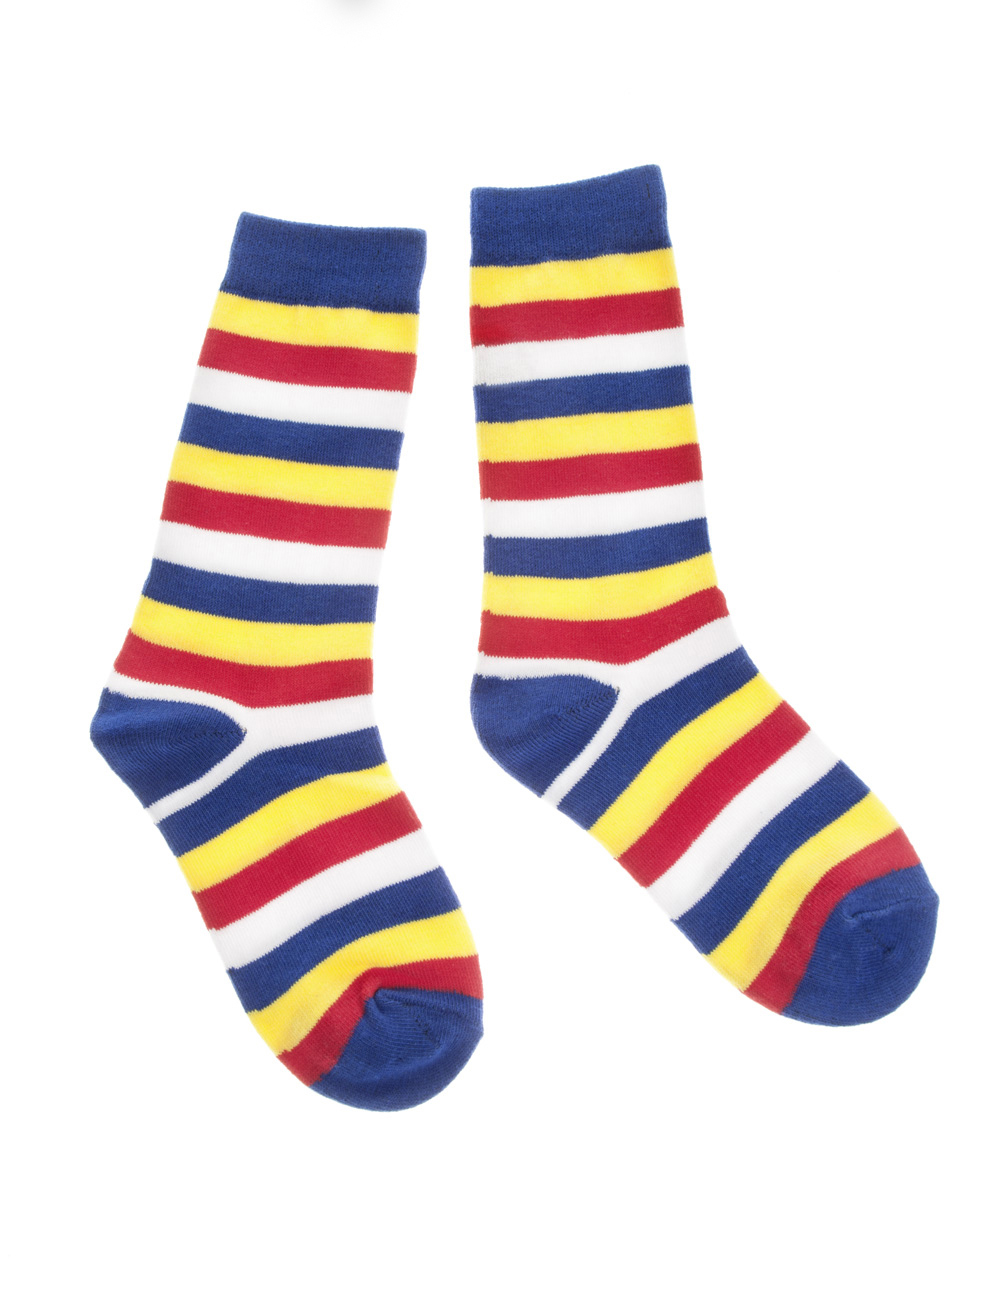 Socken gestreift rot/weiß/blau/gelb 30-34